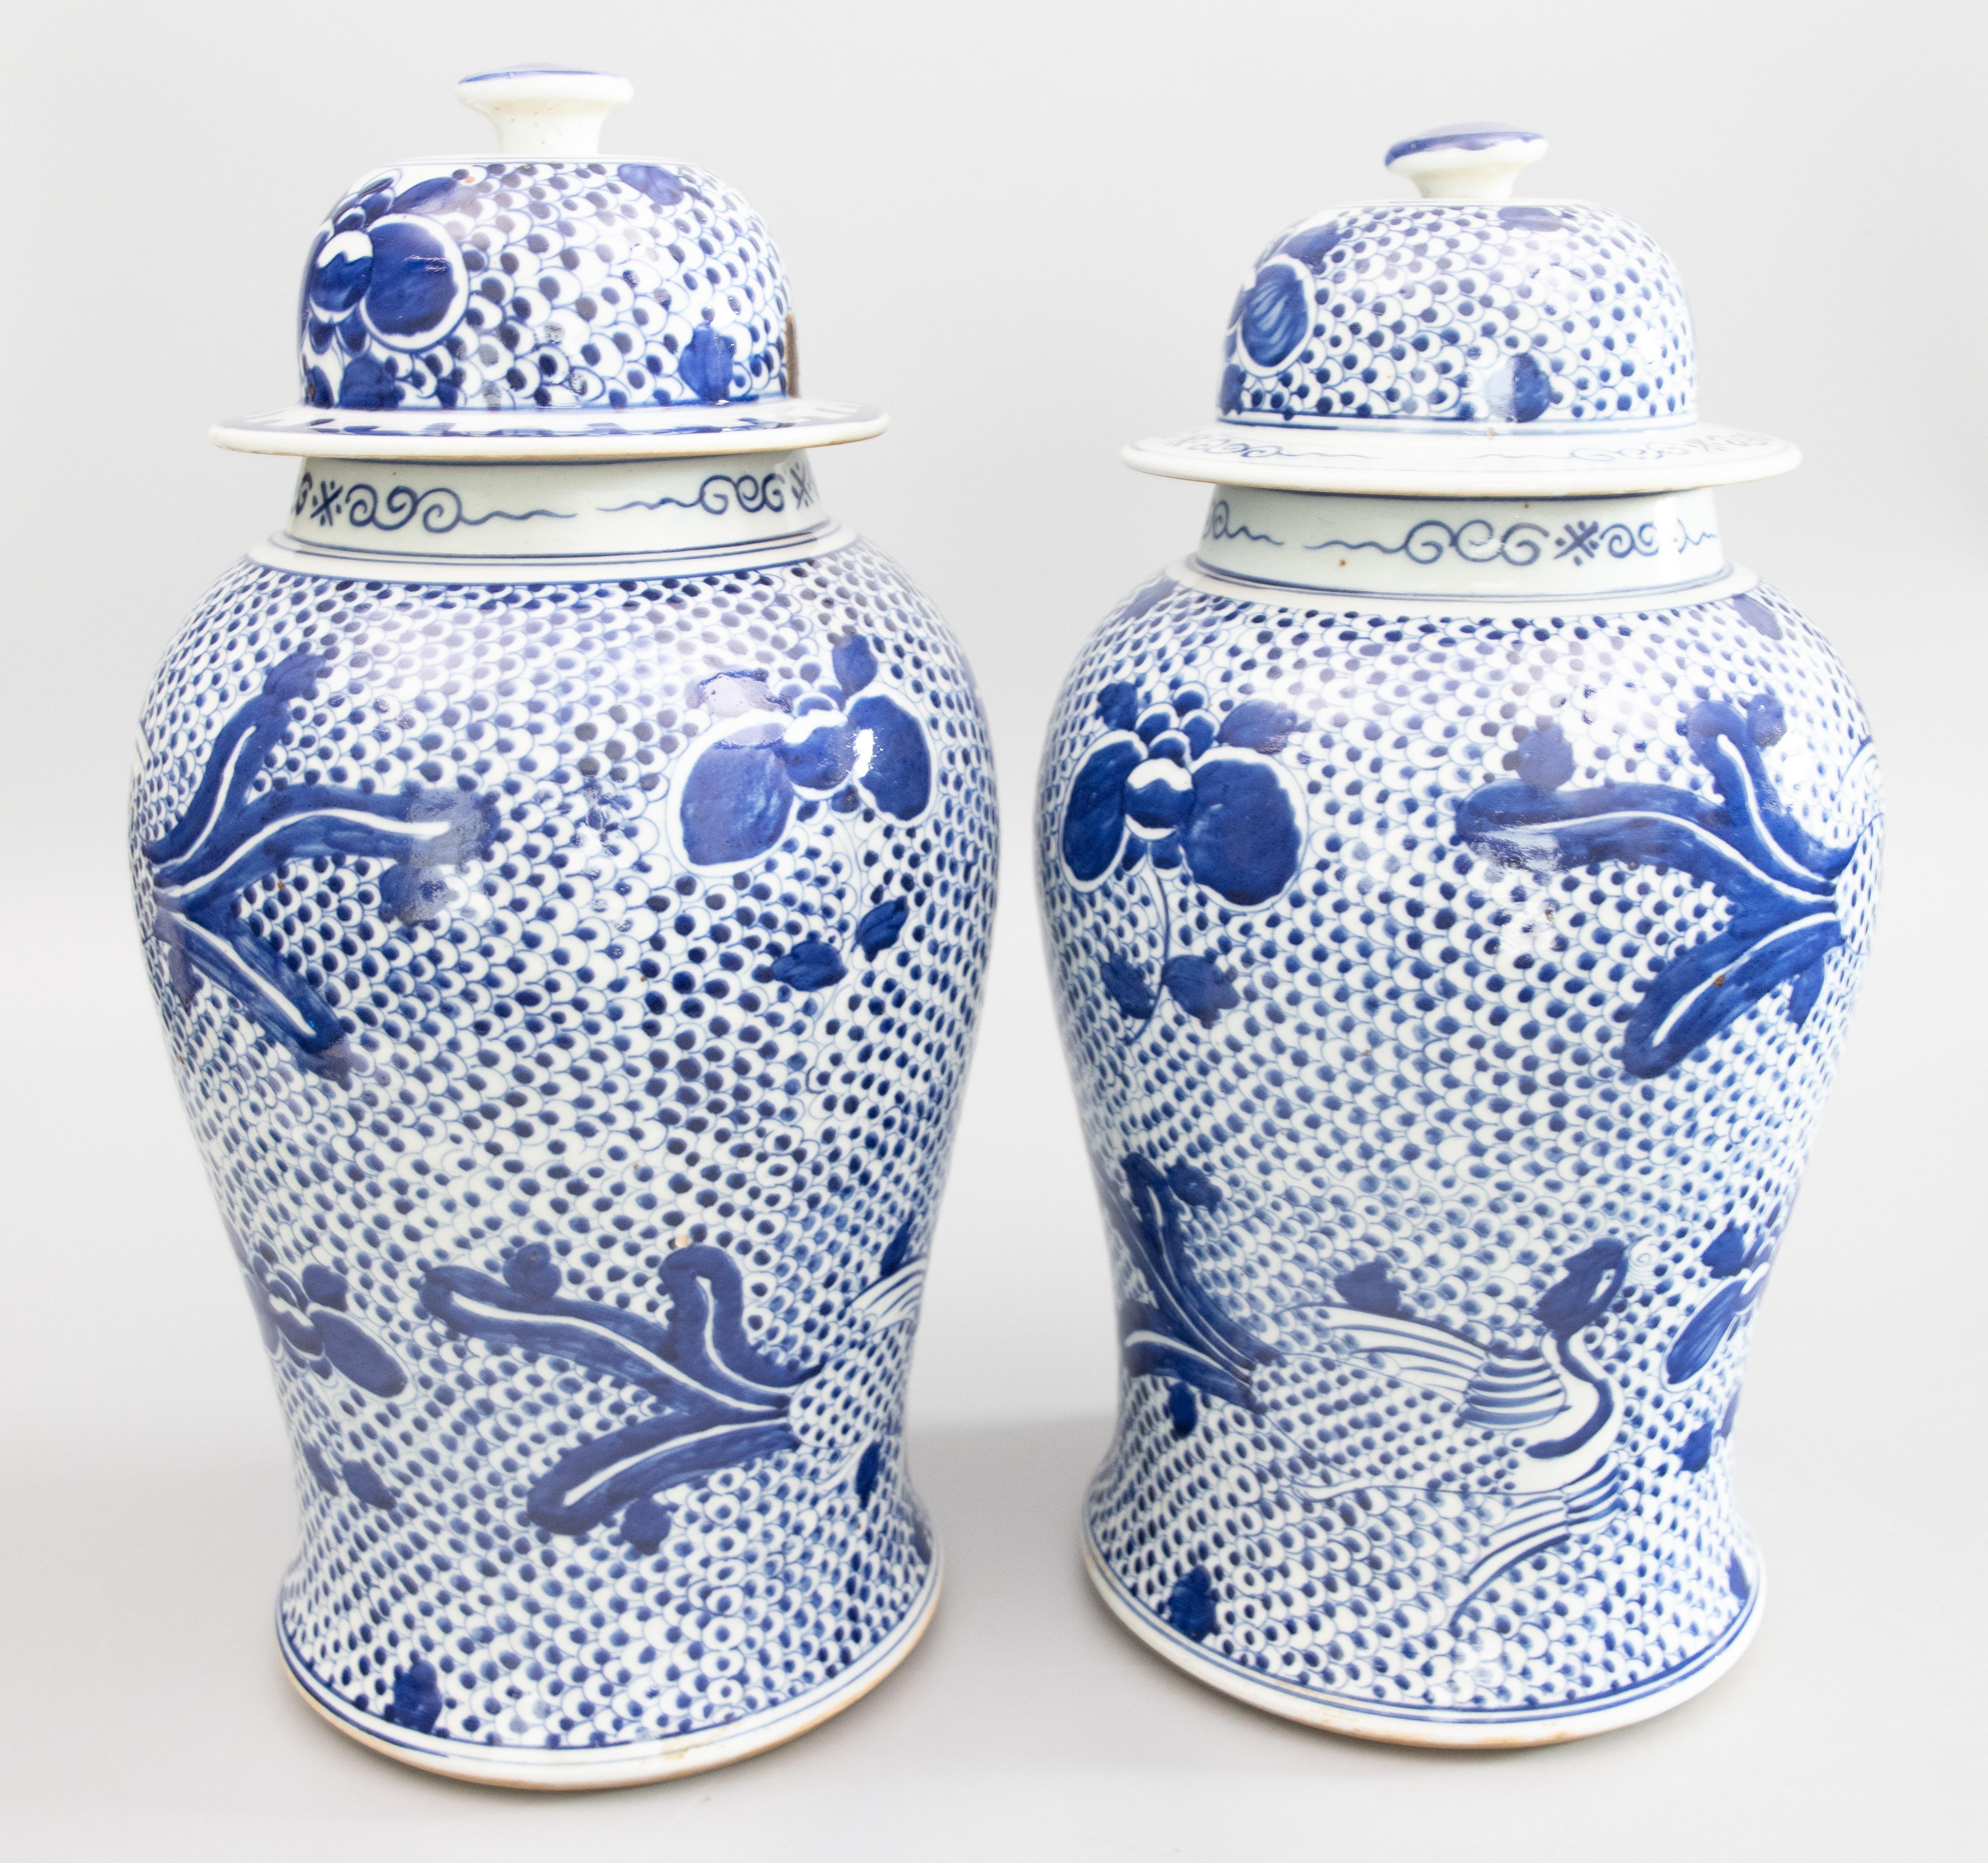 Ein hübsches antikes Paar handgefertigter chinesischer Tempel- oder Ingwer-Gläser im Kangxi-Stil mit Deckel. Diese atemberaubenden Gläser sind schön groß und mit handgemalten Phönixvögeln und Pfingstrosenblüten über einem leuchtend kobaltblauen und